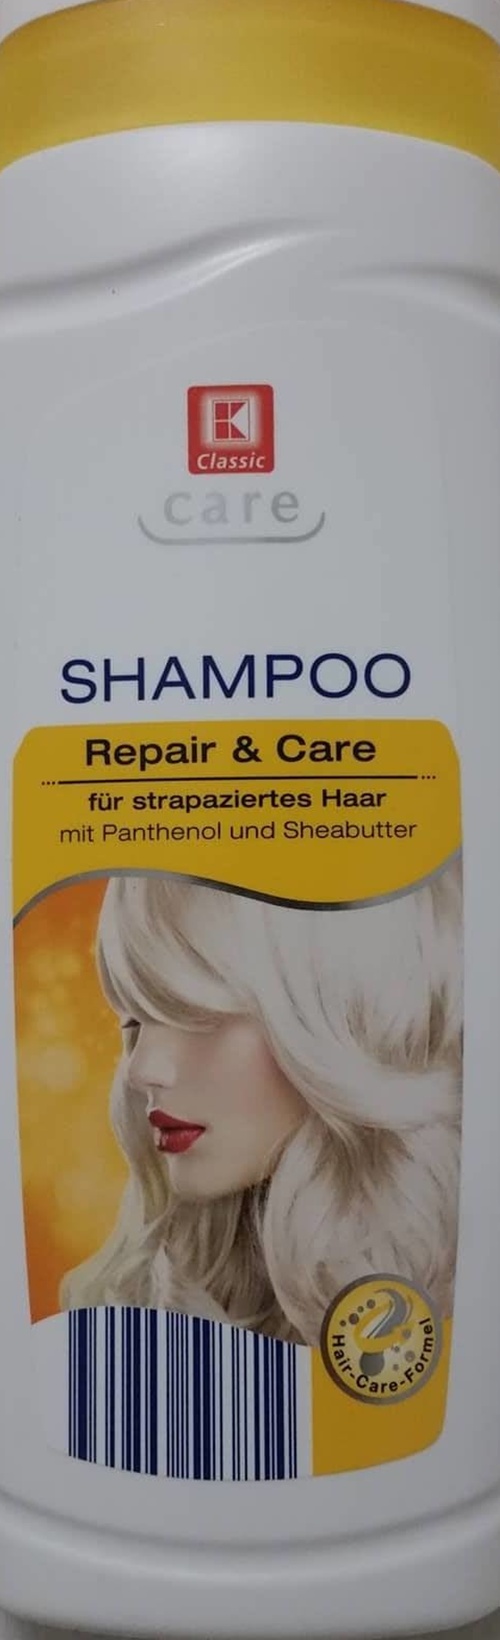 szampon do włosów kaufland care